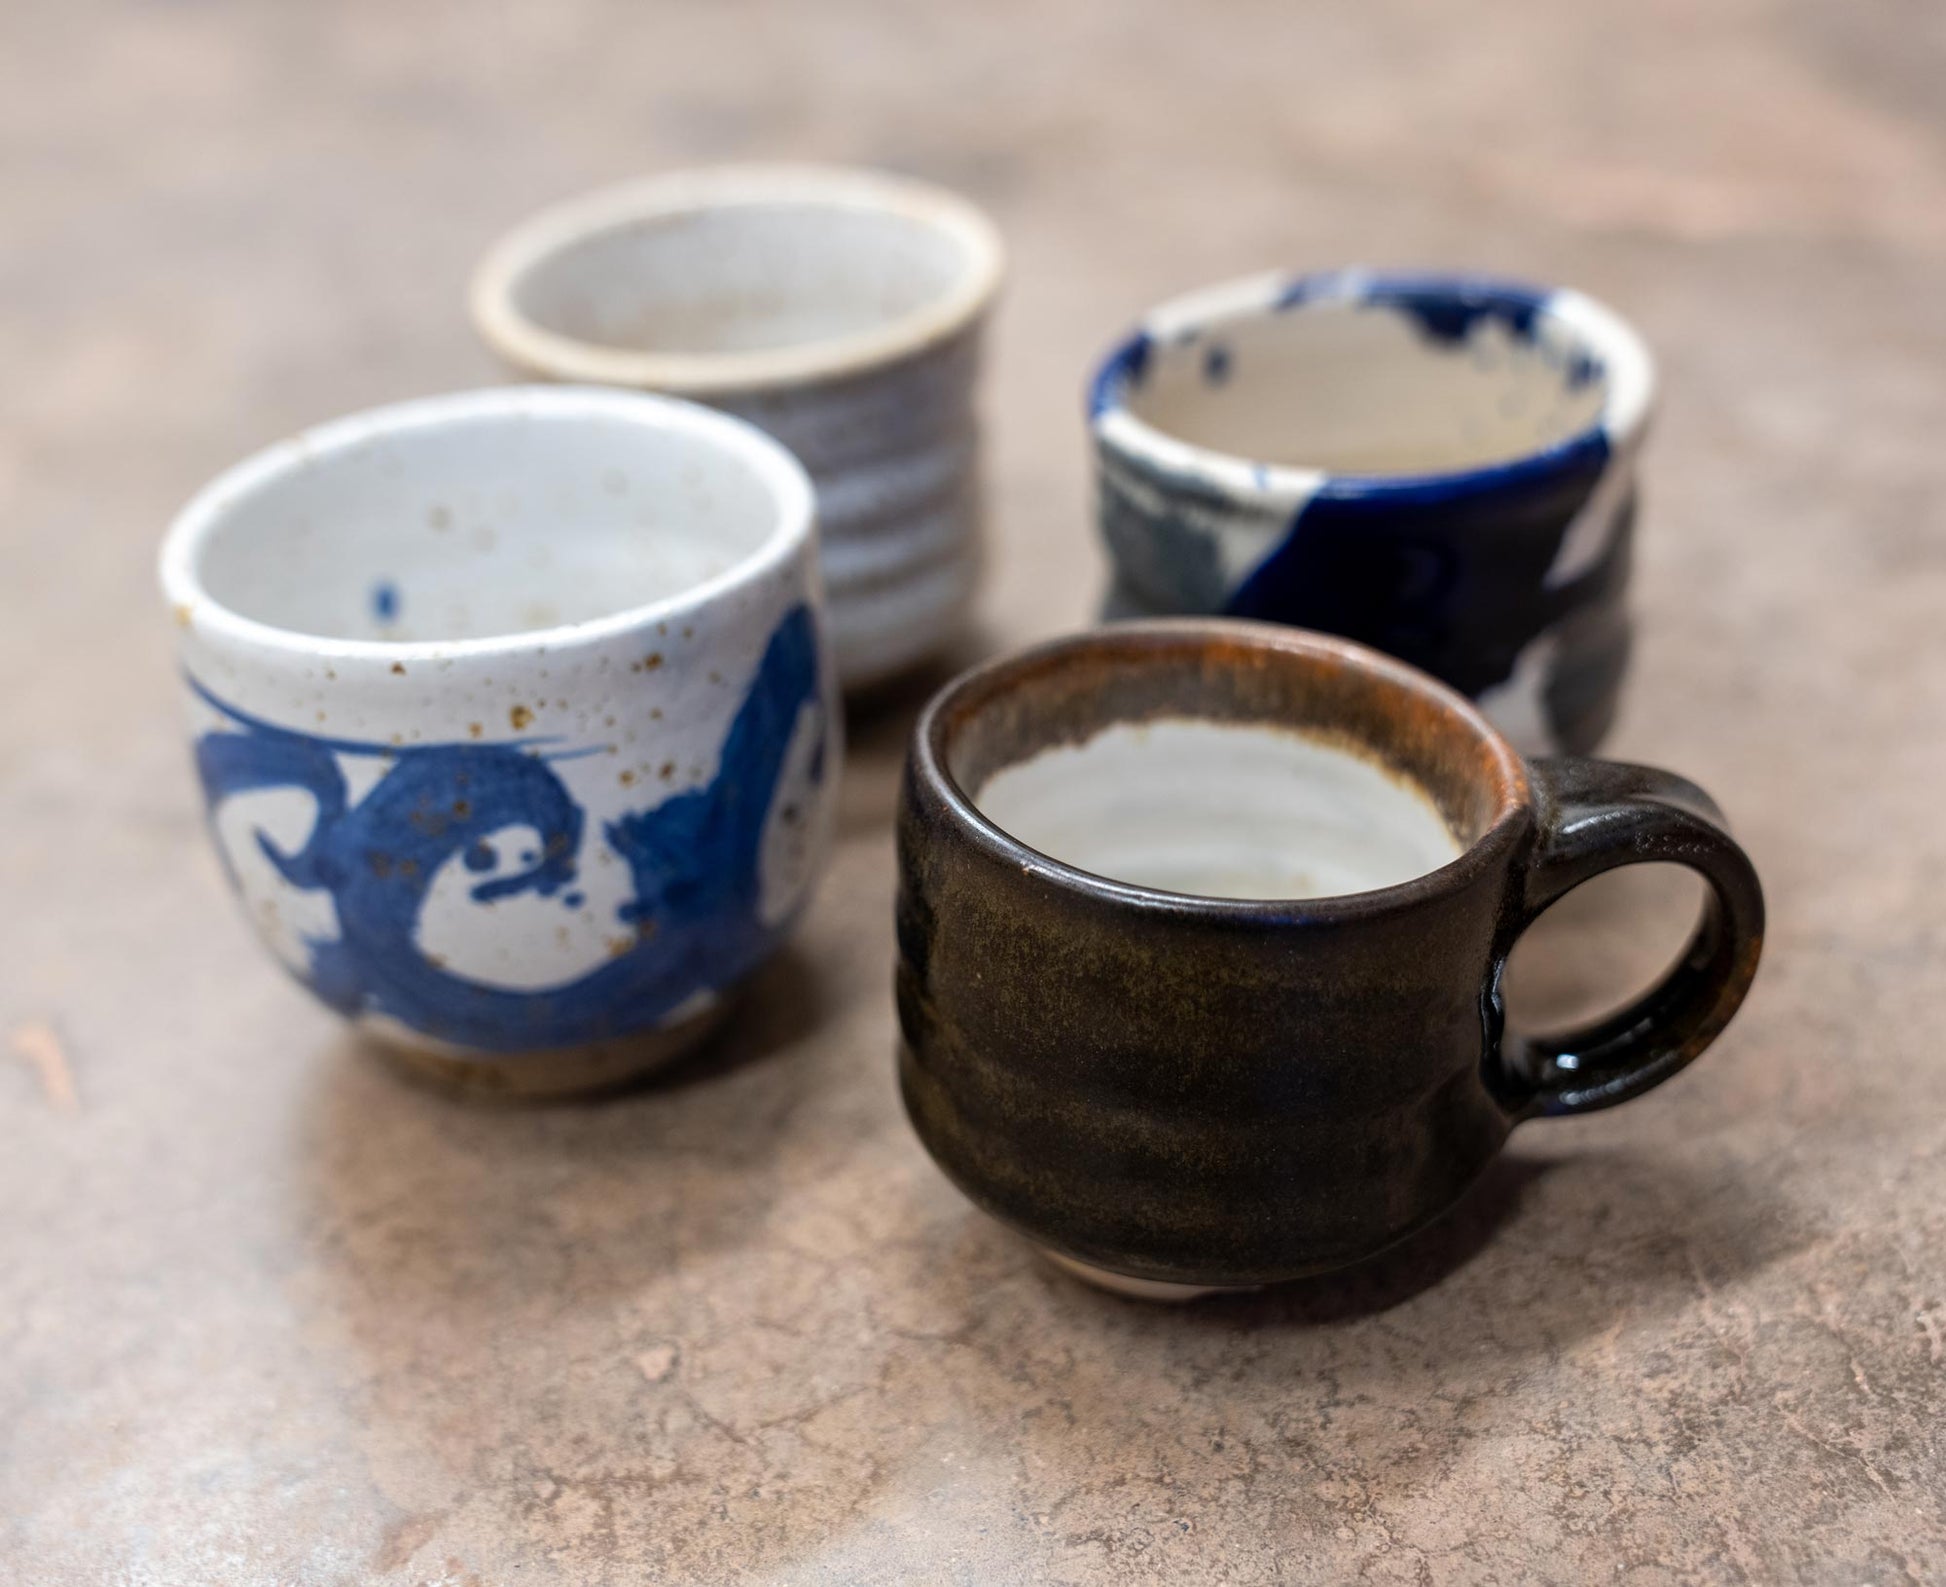 Mug with handle (Unique)